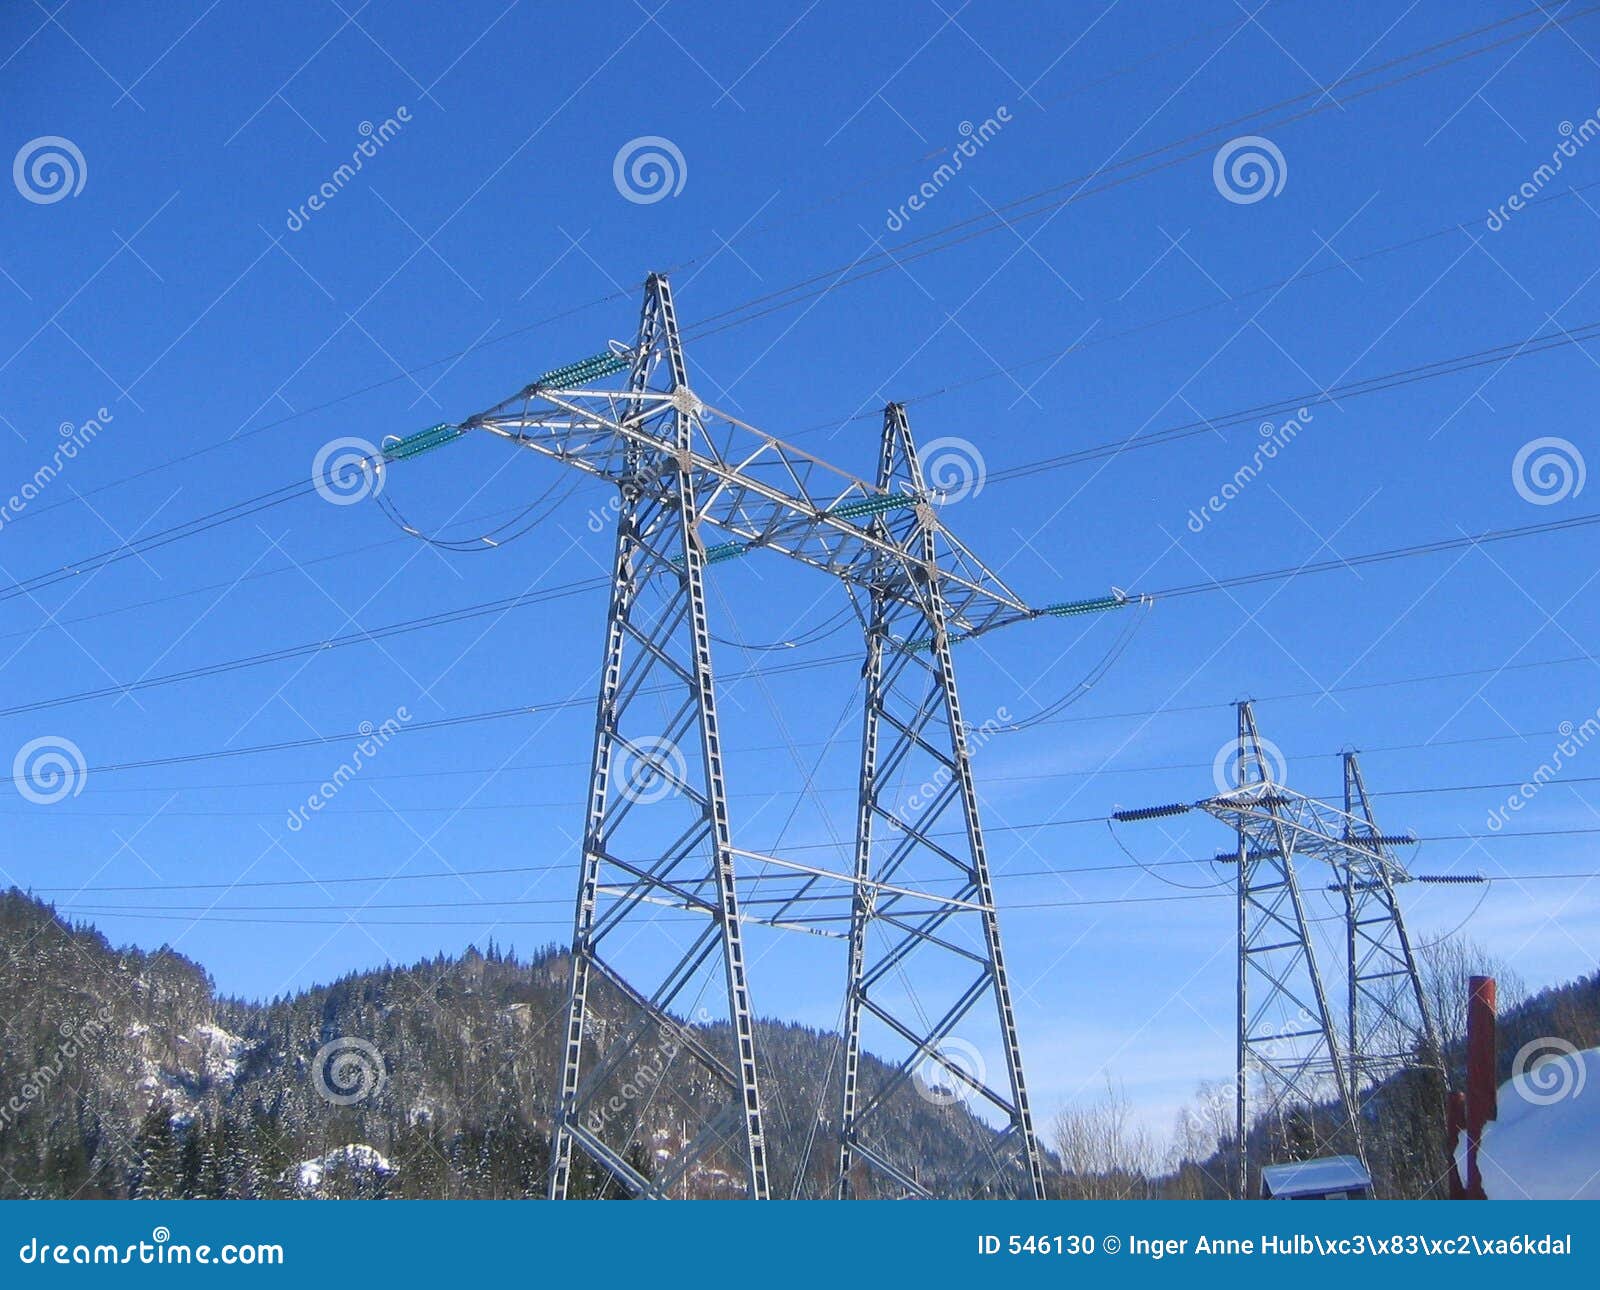 high voltage masts